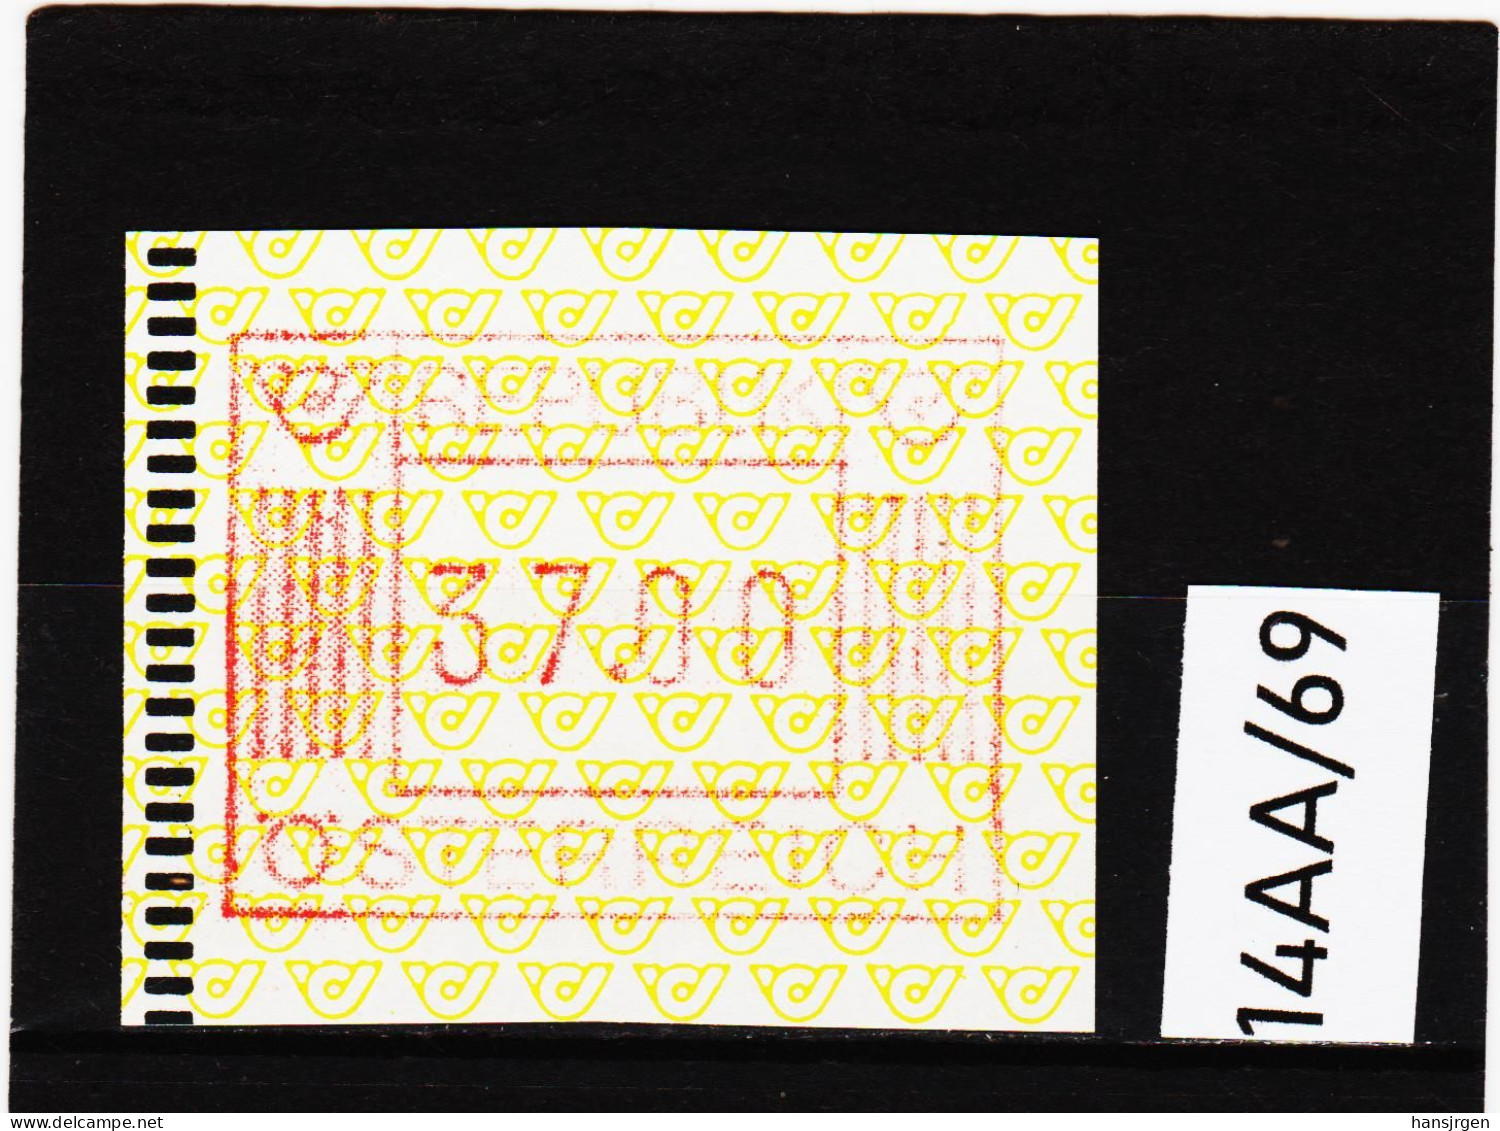 14AA/69  ÖSTERREICH 1983 AUTOMATENMARKEN 1. AUSGABE  37,00 SCHILLING   ** Postfrisch - Machine Labels [ATM]